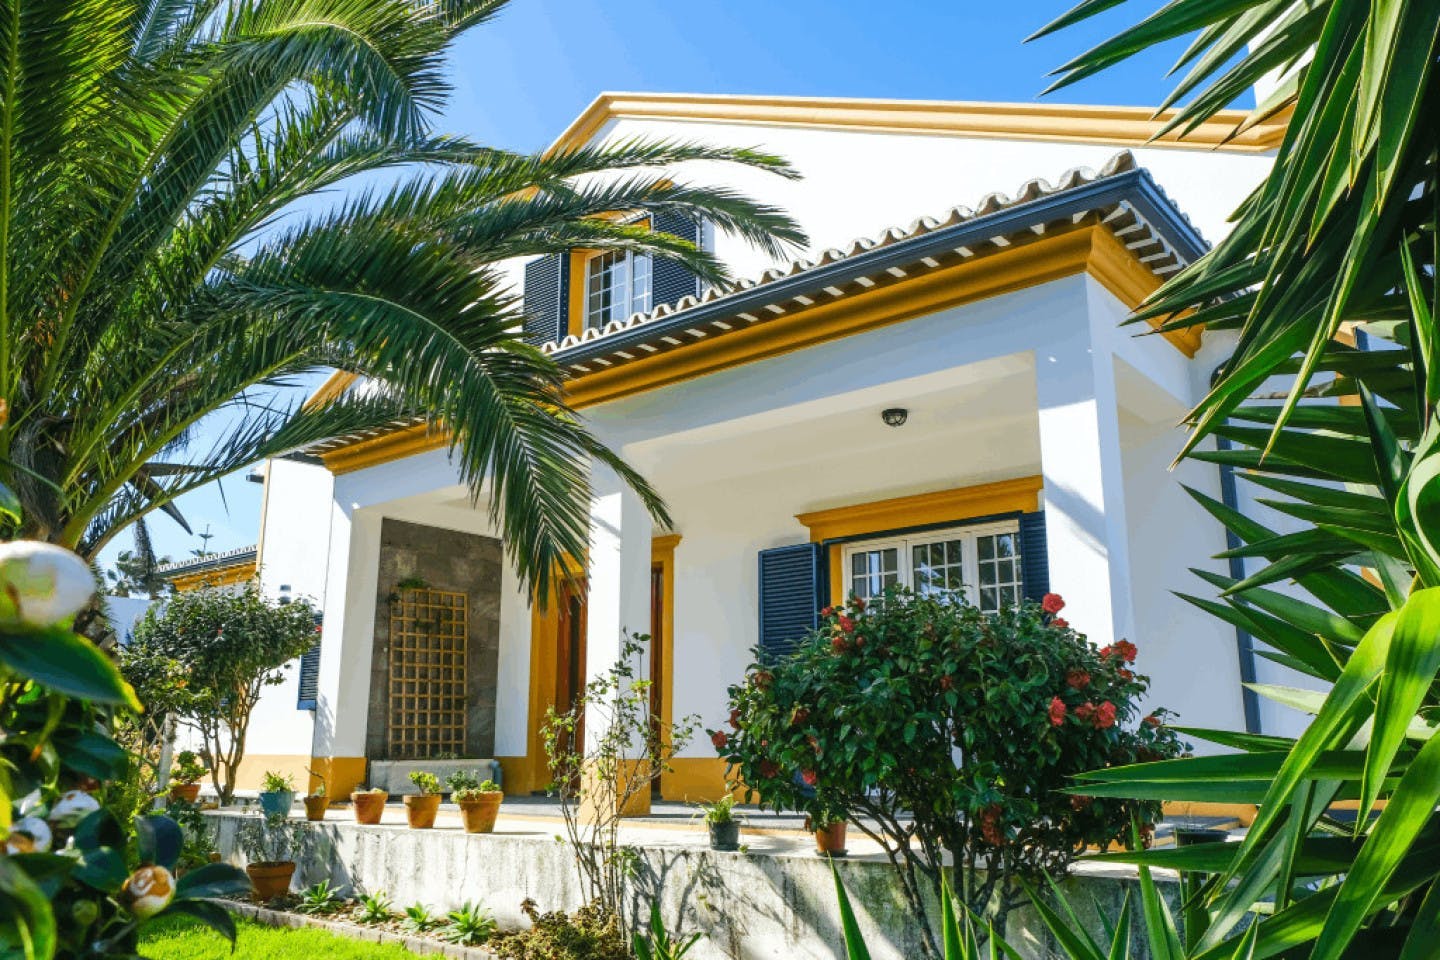 Stunning house near Santa Barbara beach